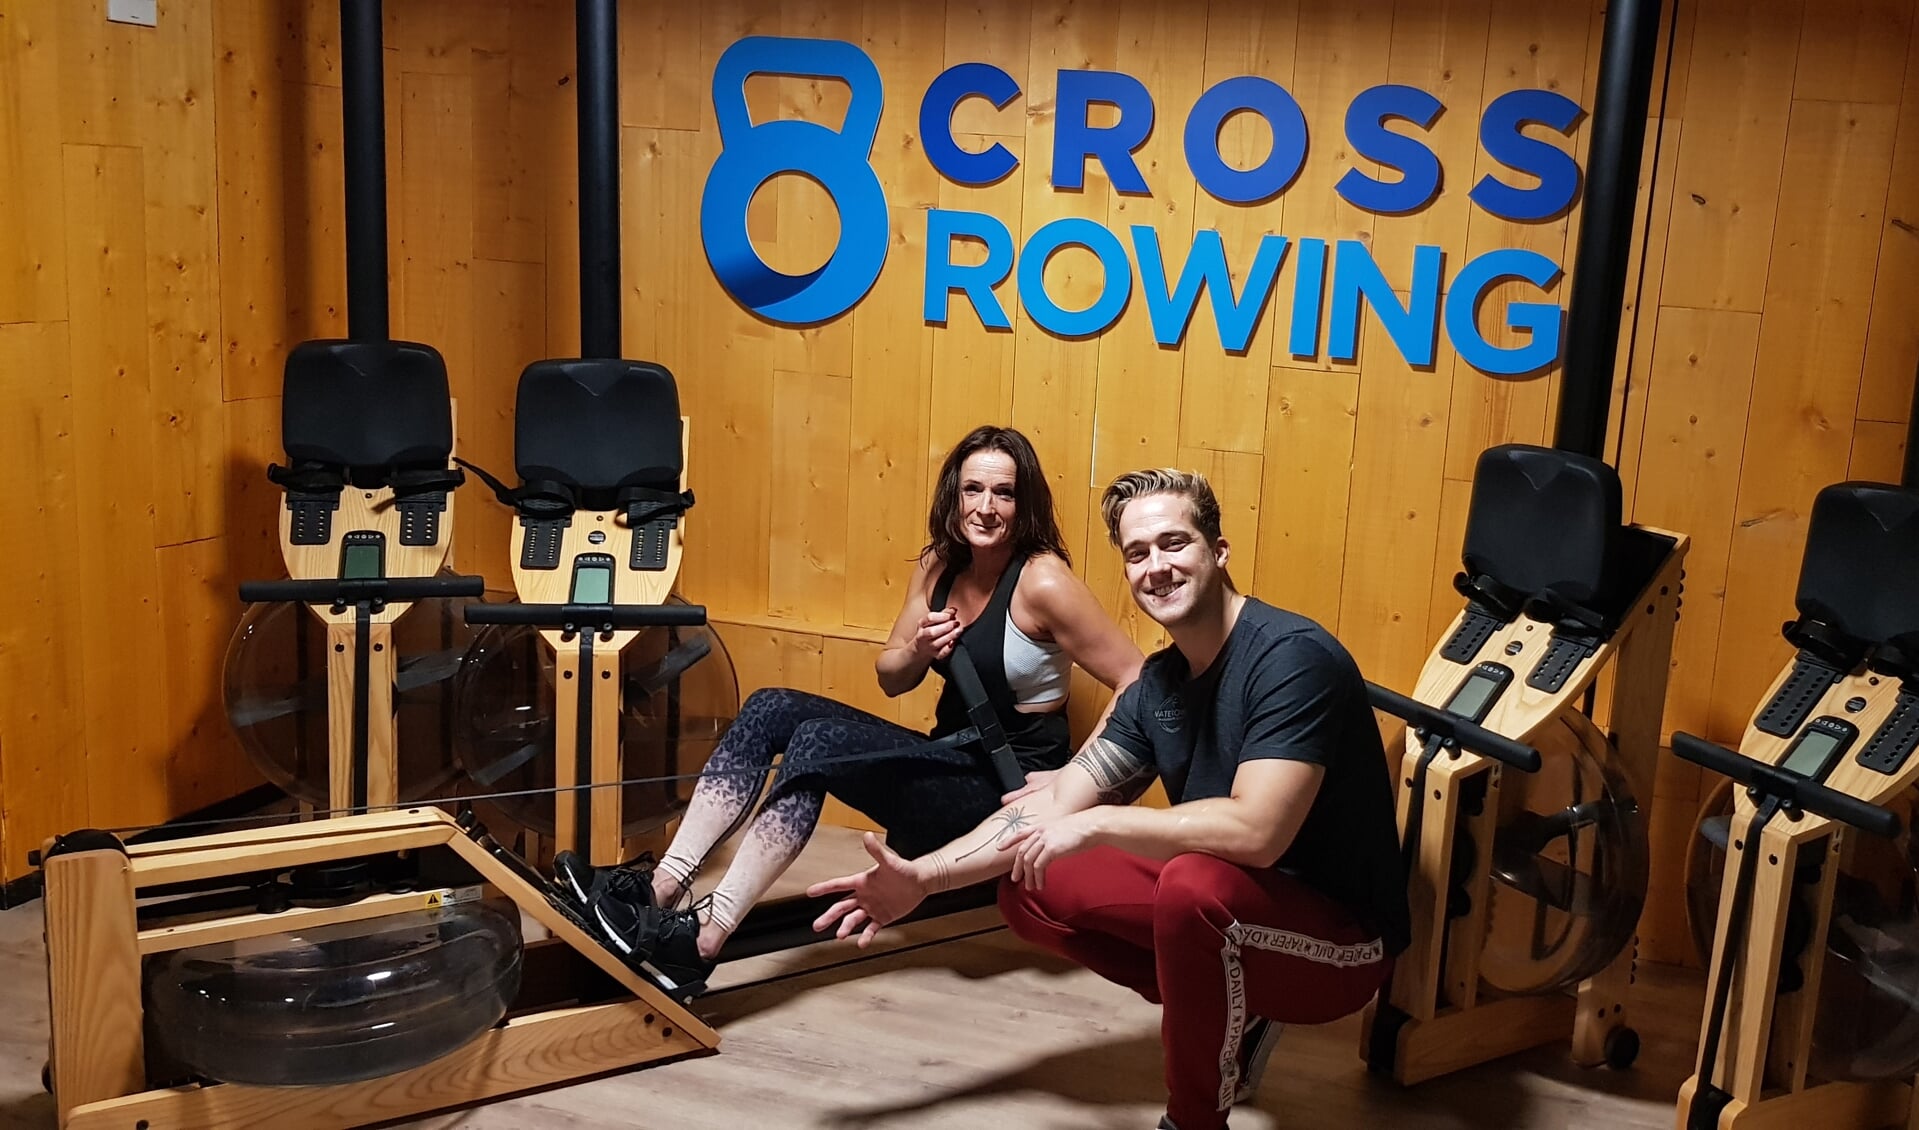 Diego en Susan, moeder en zoon en allebei instructeur Cross Rowing bij SportArt Fitness. (Foto: PR) 